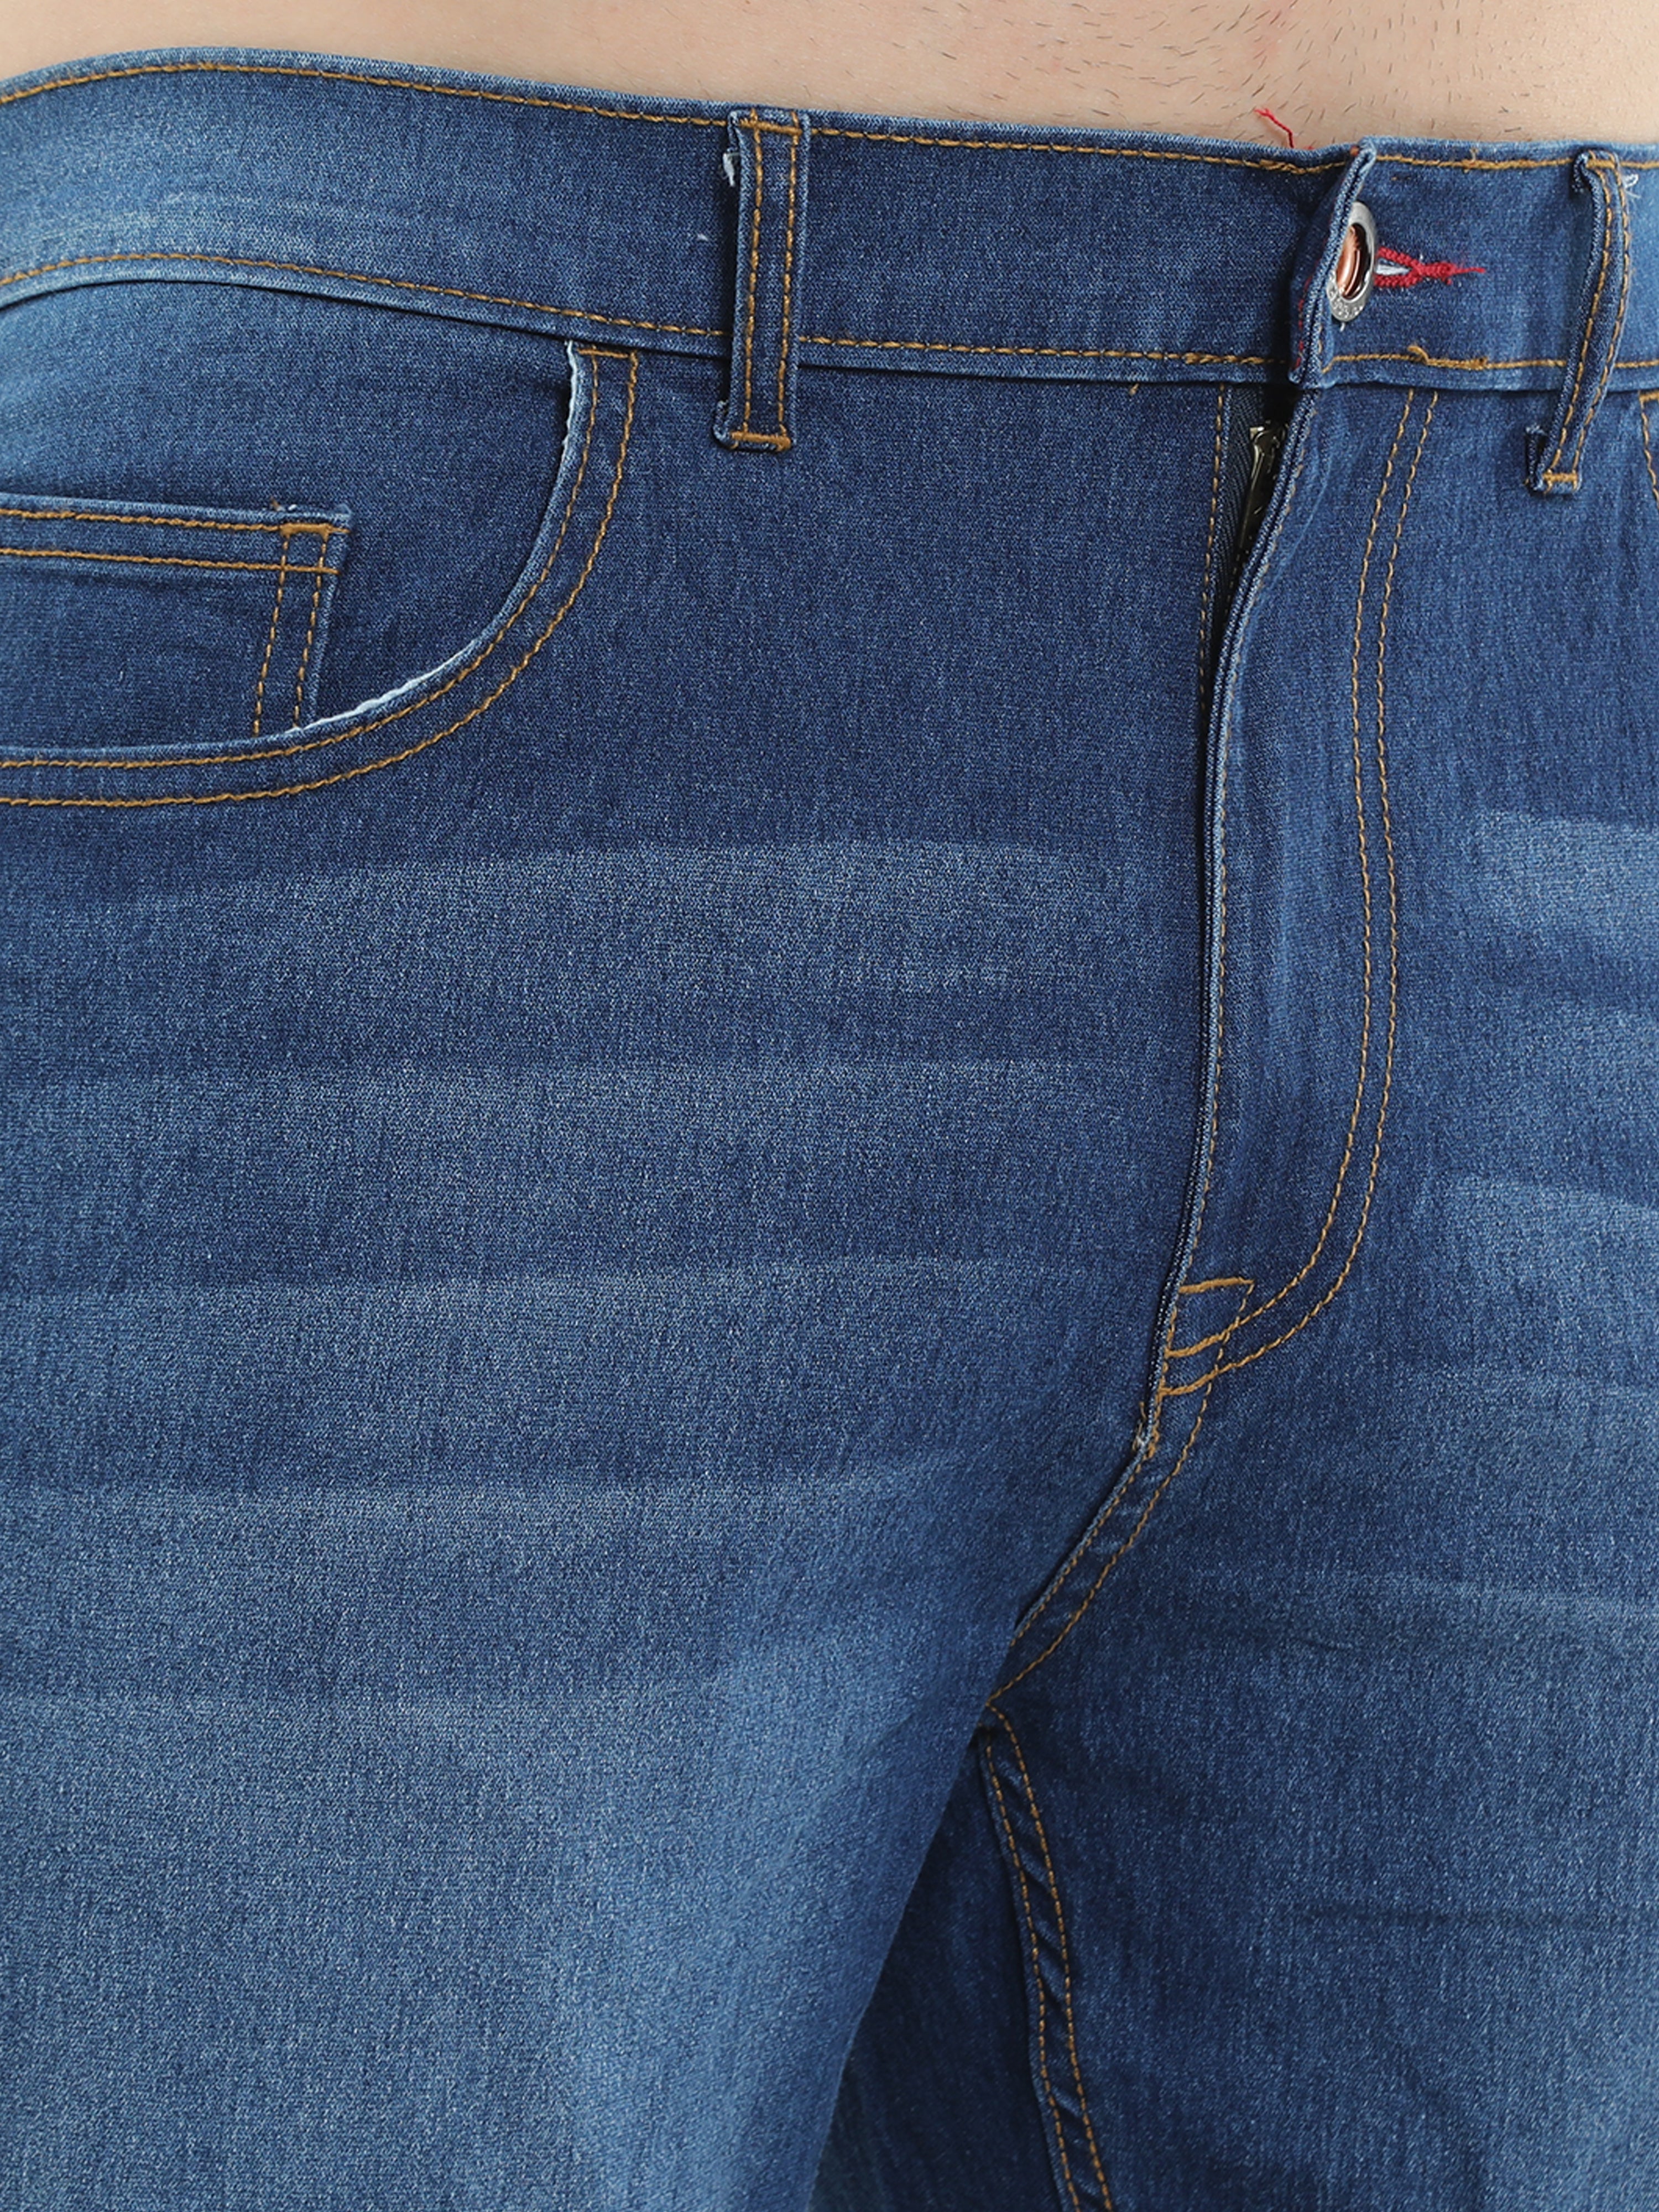 Trigger Berry Denim Blue  Men's Regular Slim-Fit Jeans